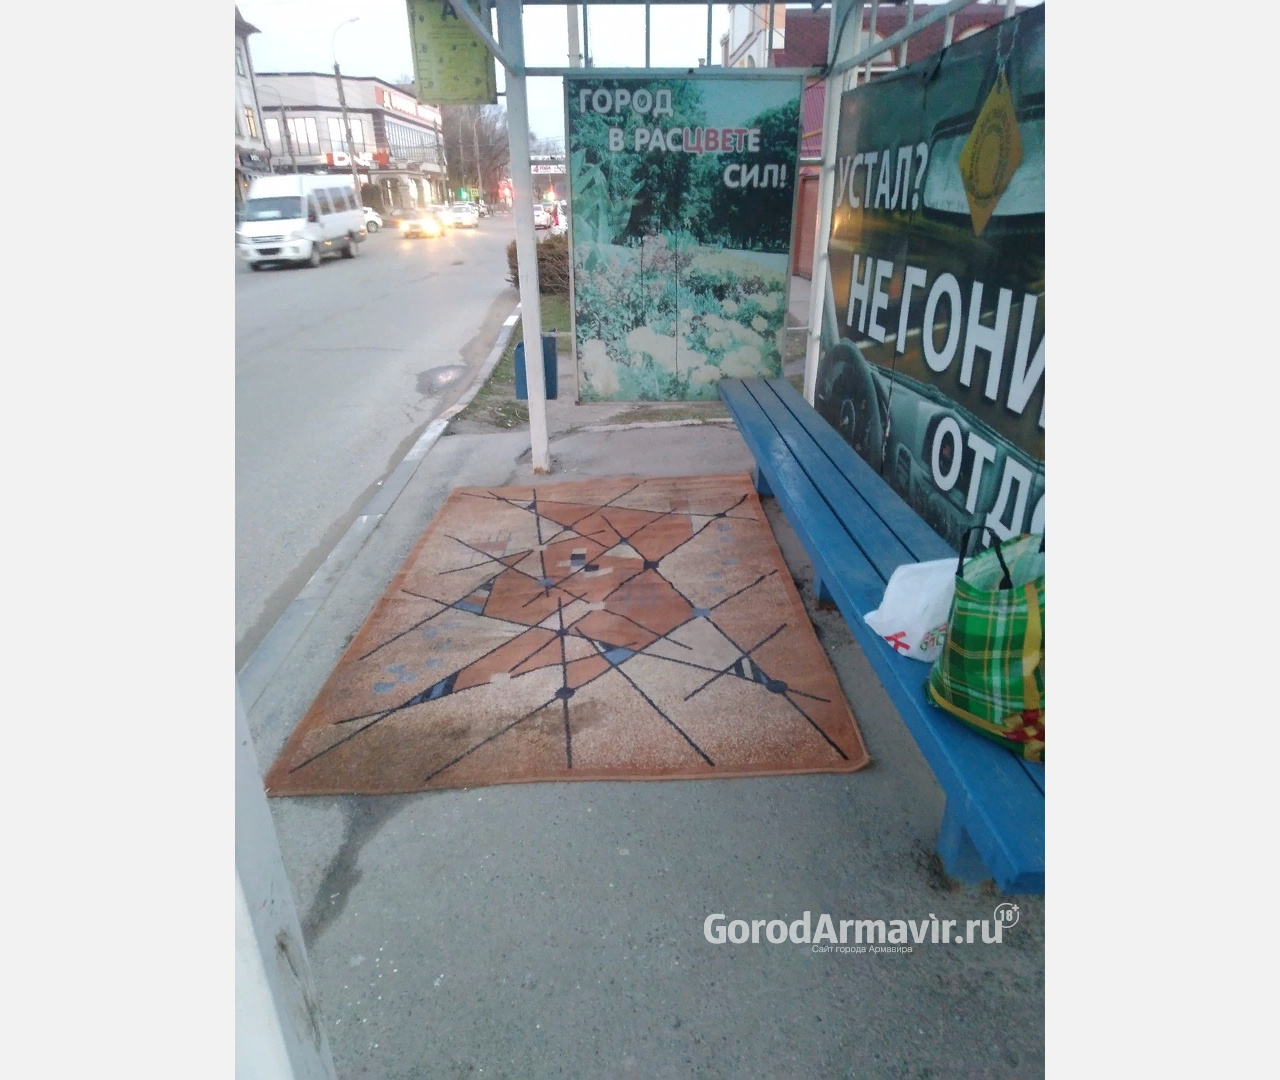 Ковер на автобусной остановке удивил жителей Армавира 